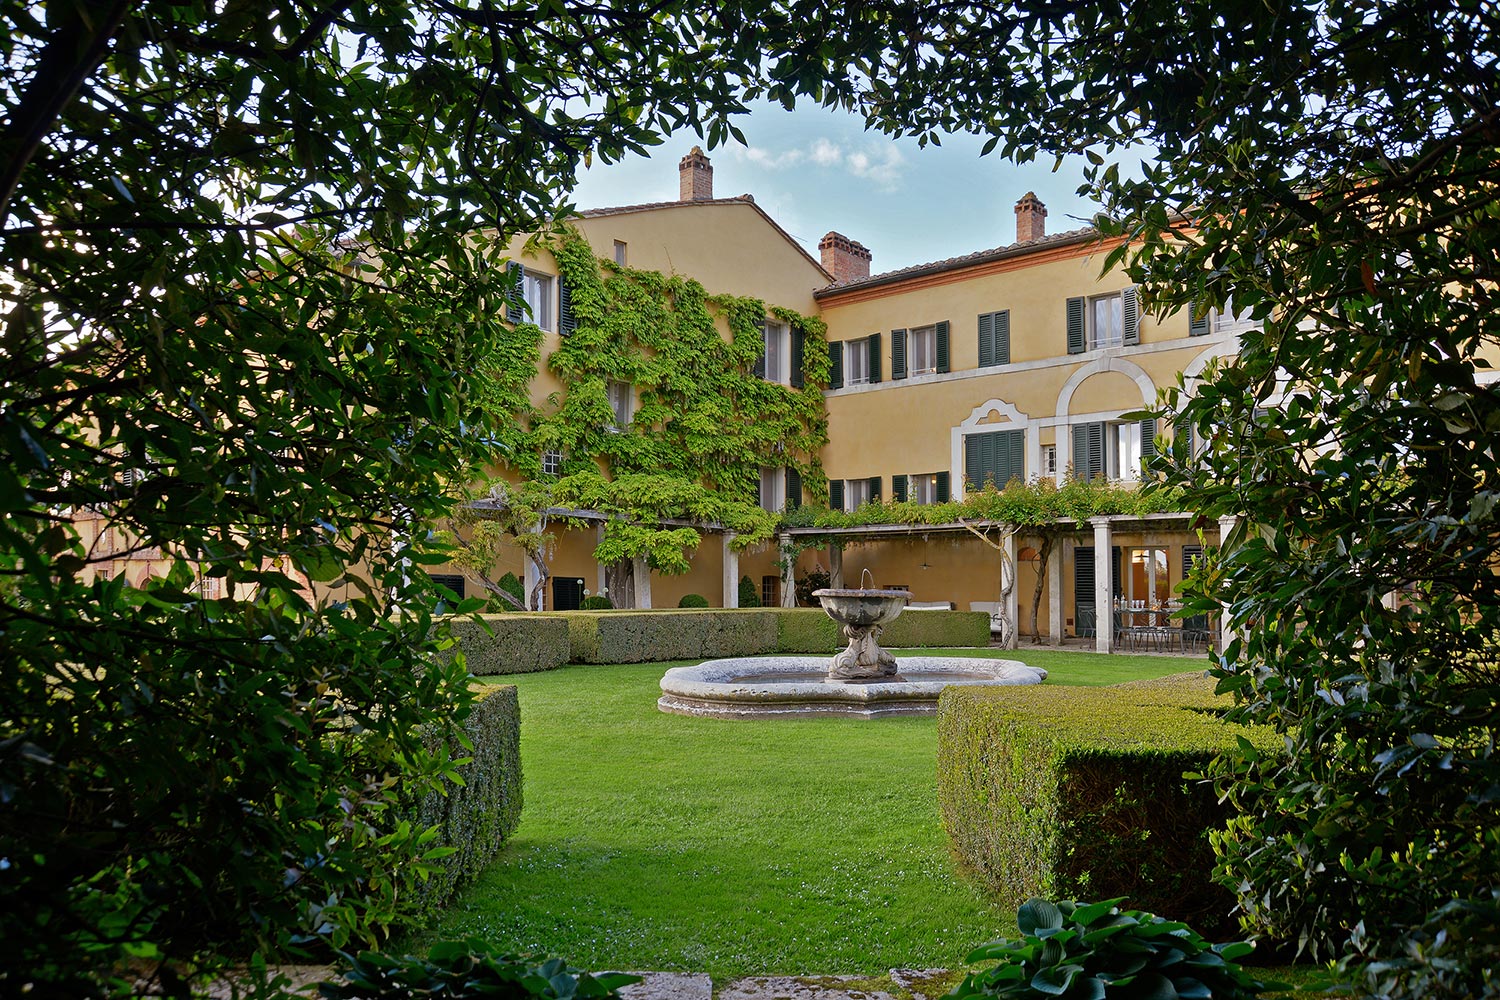 La Foce | Villa Origo